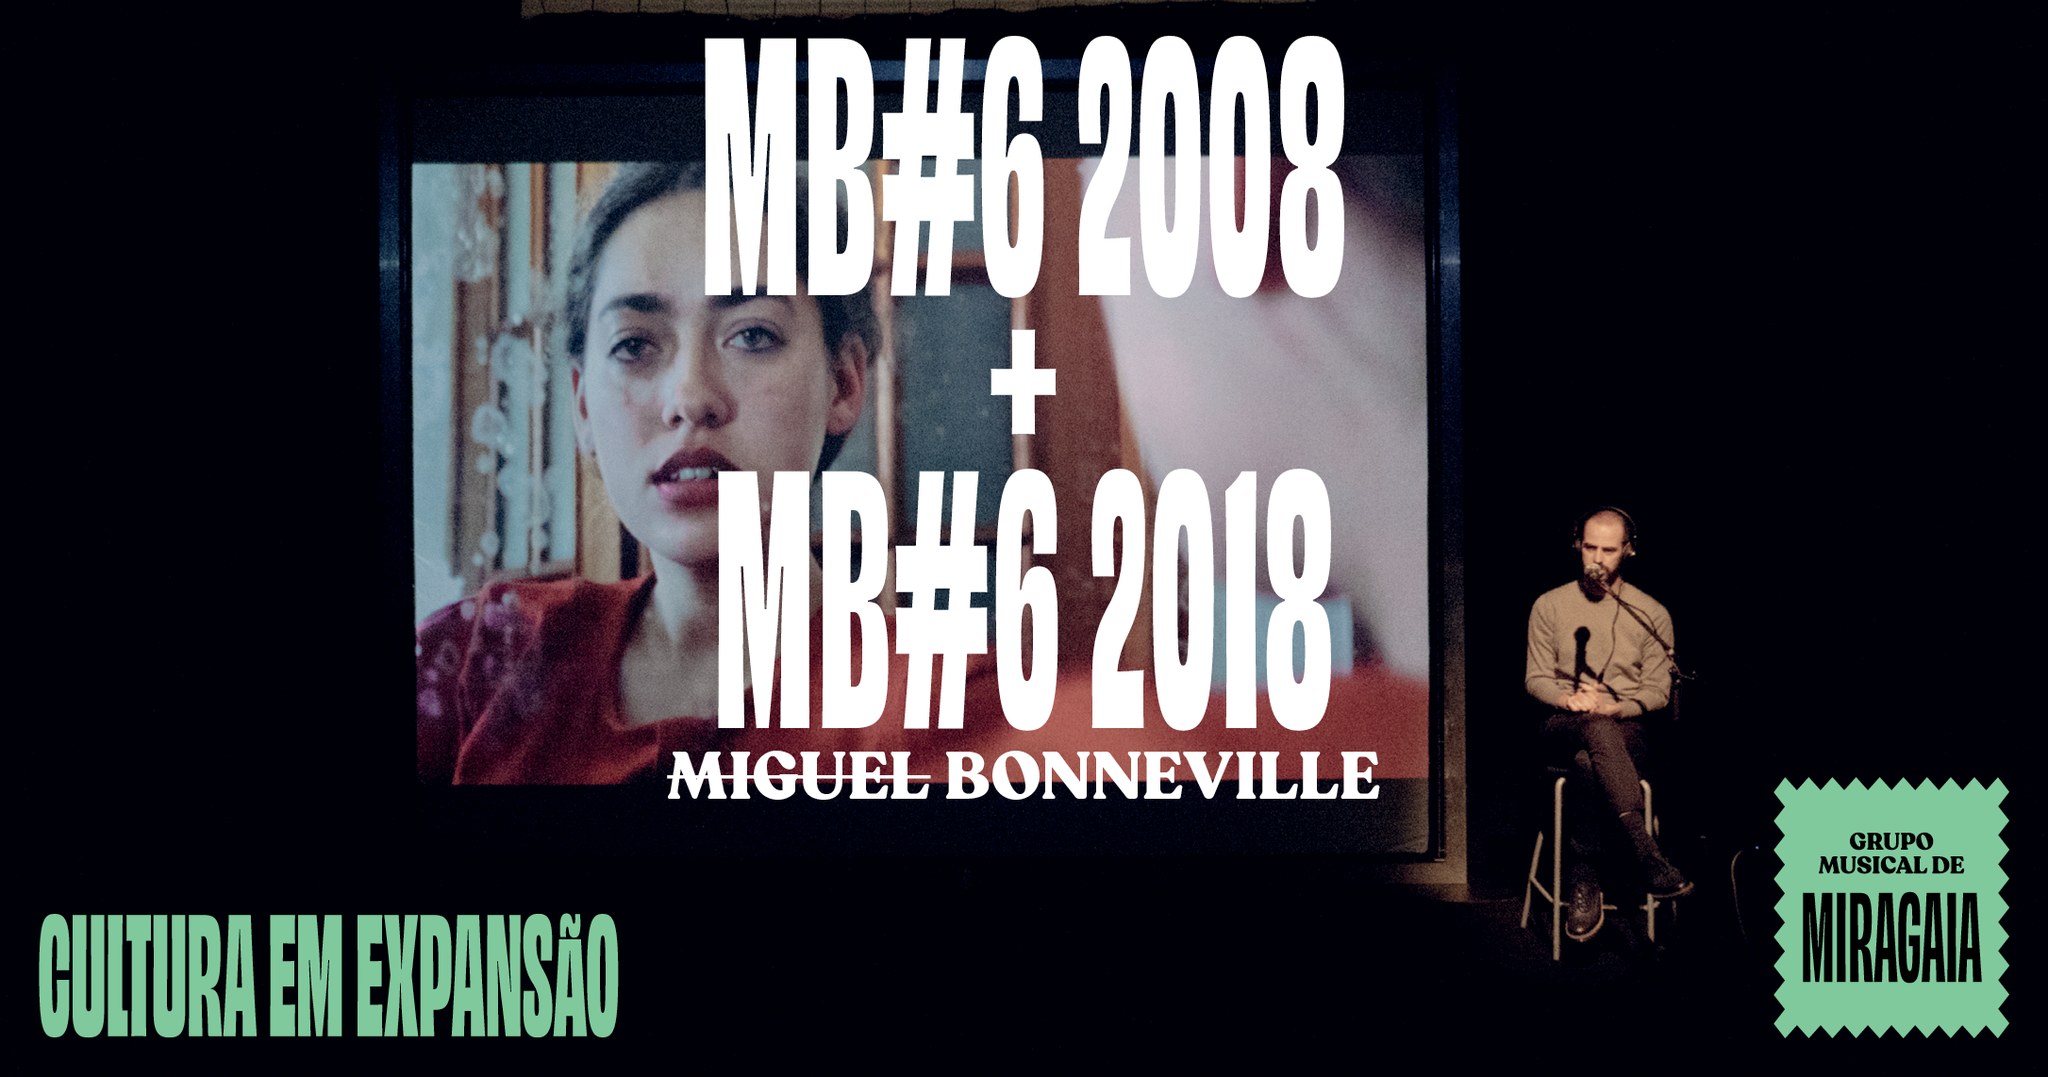 MB#6 2008 + MB#6 2018 | MIGUEL BONNEVILLE